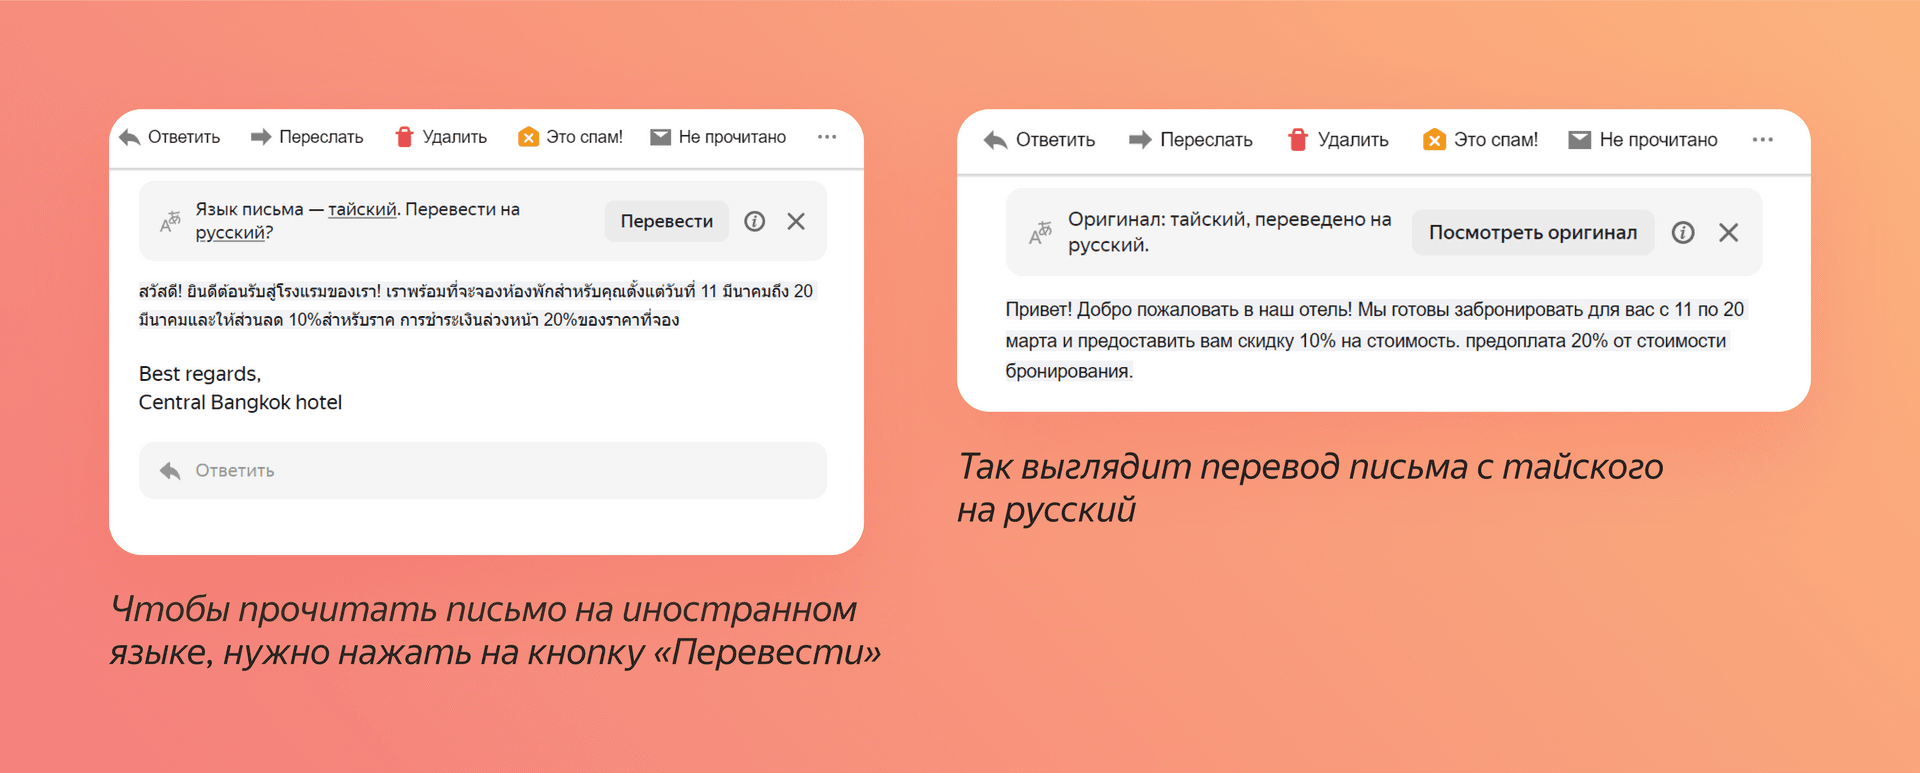 Яндекс 360 помогает в путешествиях_5